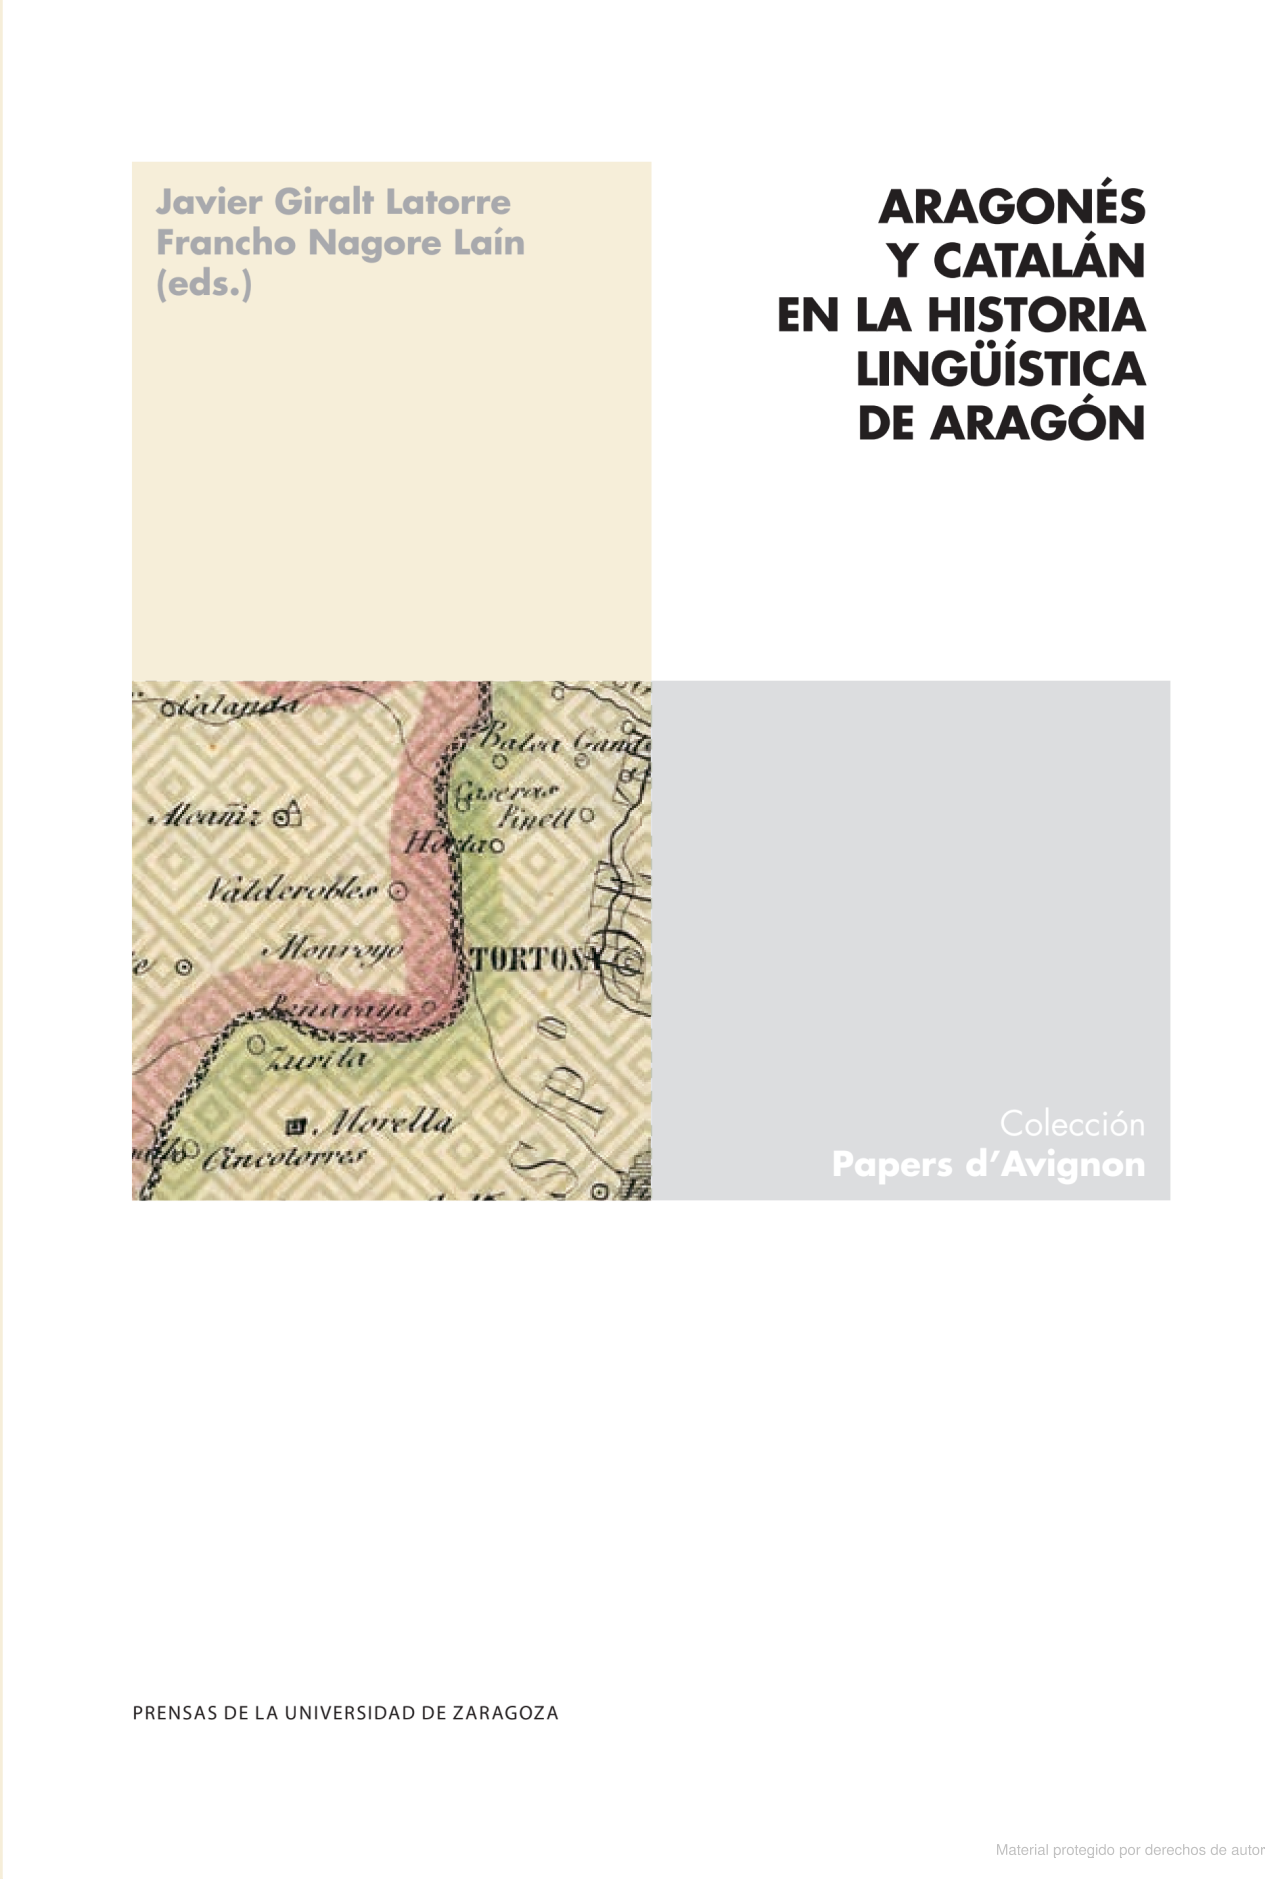 Imagen de portada del libro Aragonés y catalán en la historia lingüística de Aragón